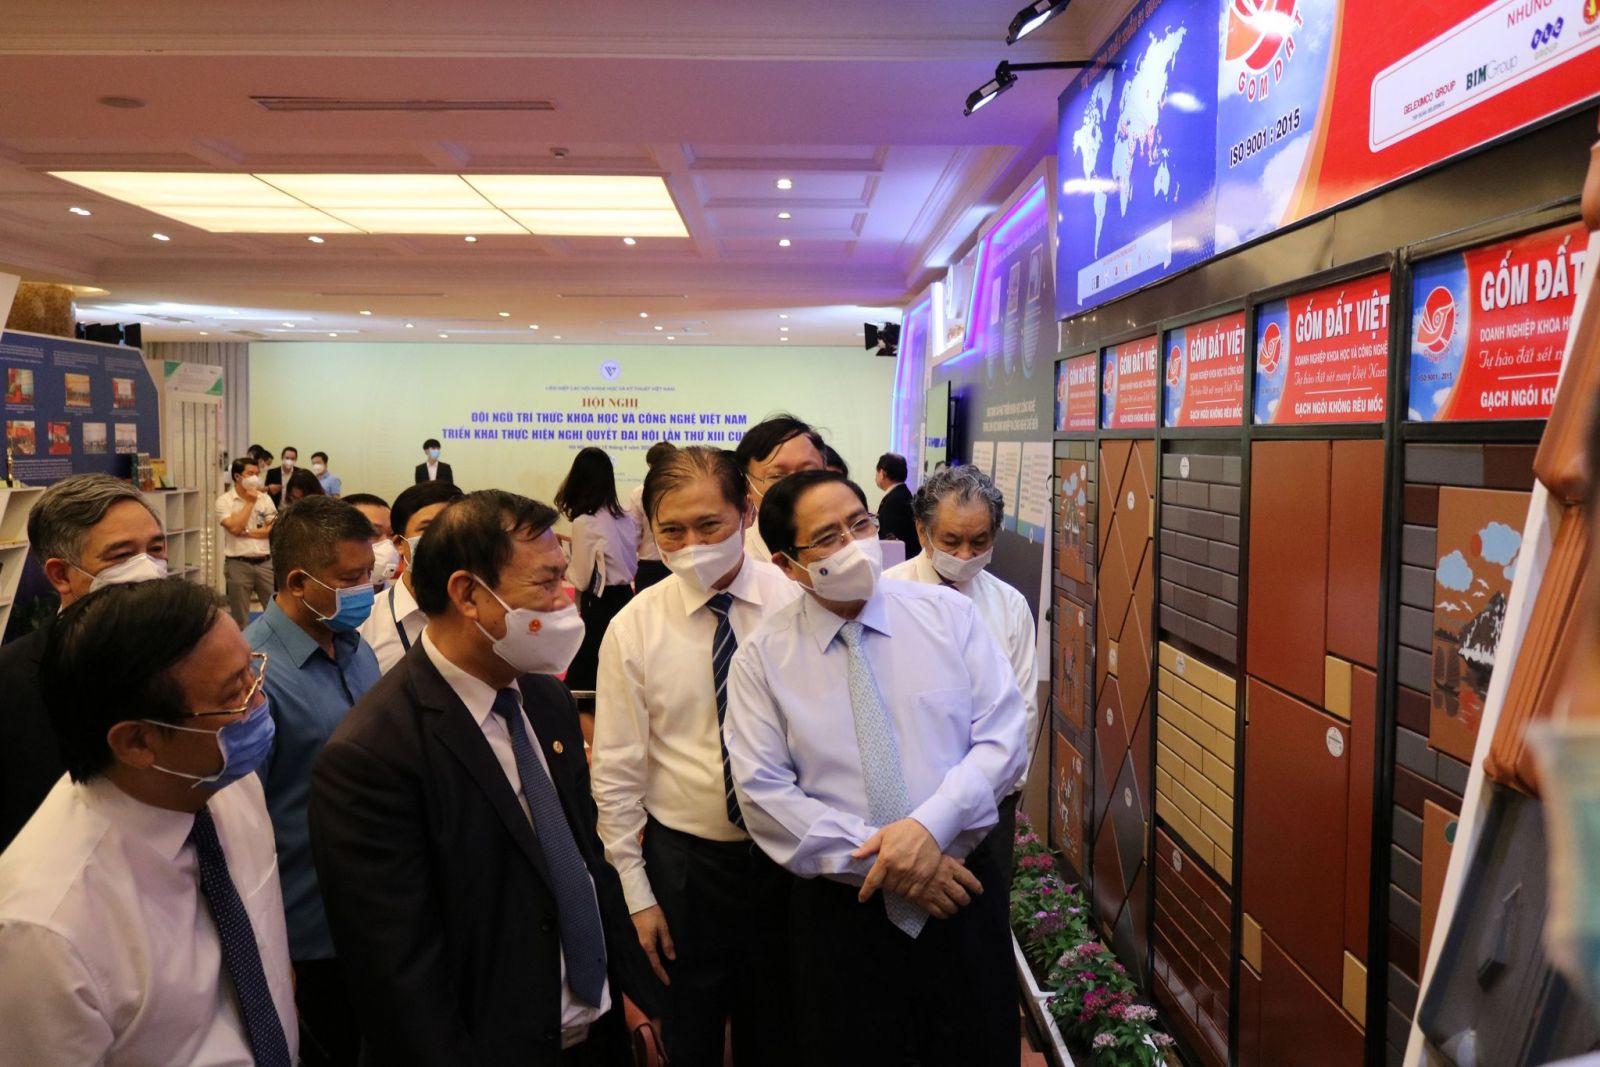 Thủ tướng Chính phủ Phạm Minh Chính tham quan các sản phẩm trưng bày tại gian hàng Gốm Đất Việt.